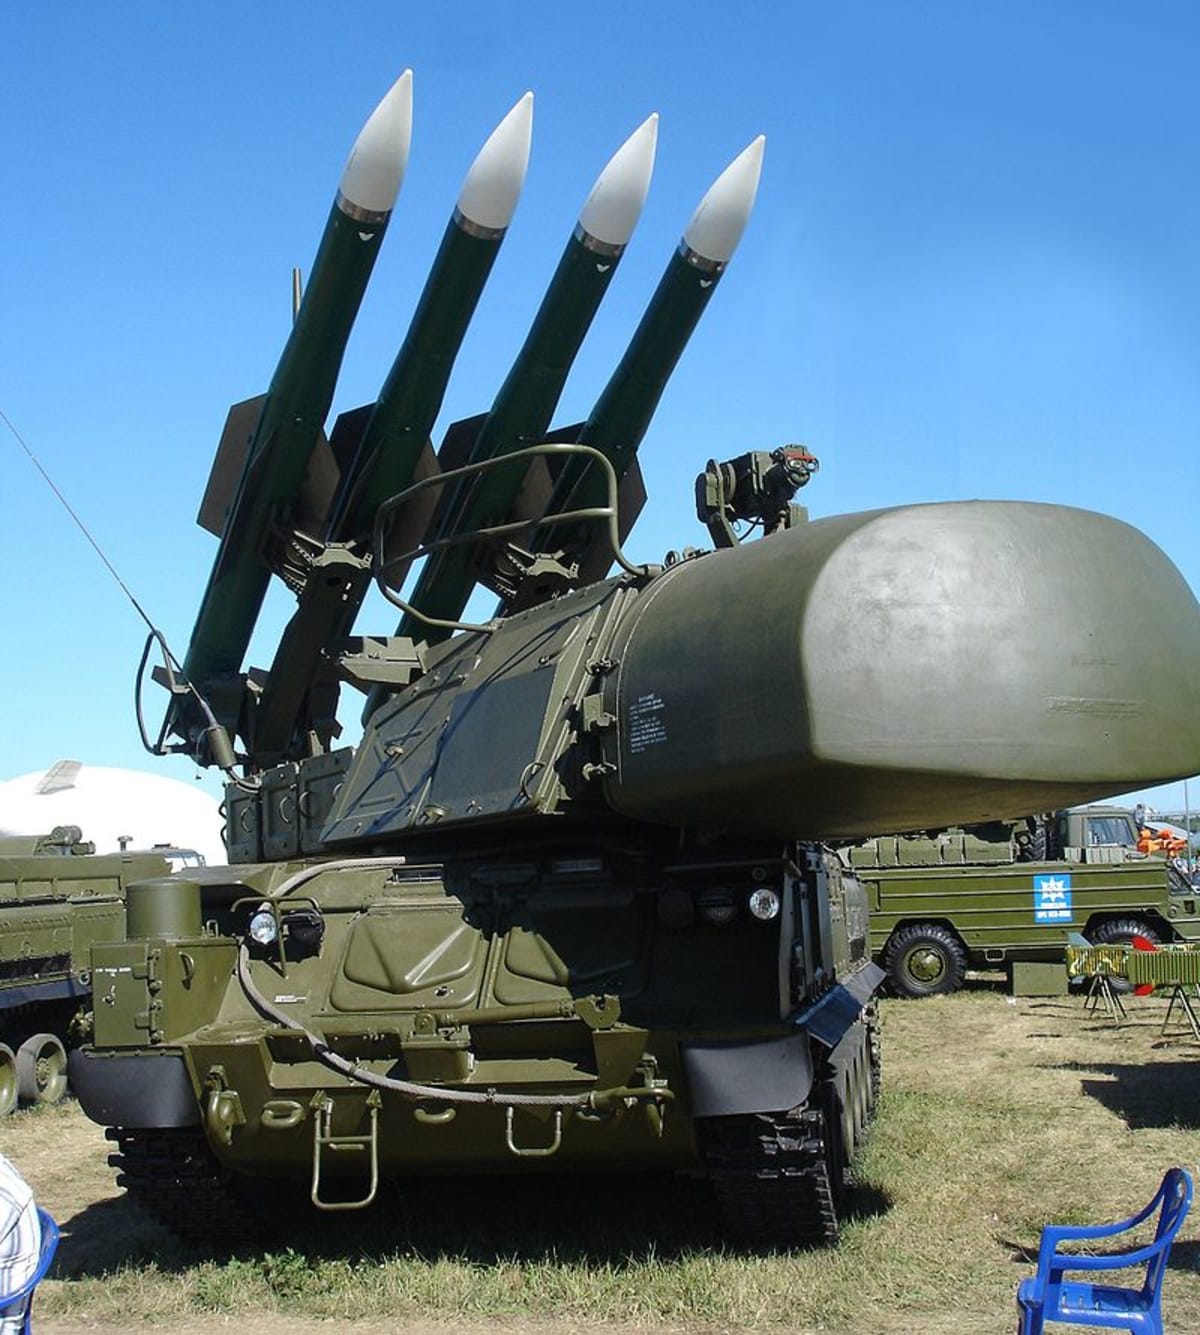 Buk-M1-2 SAM system 9A310M1-2 TELAR